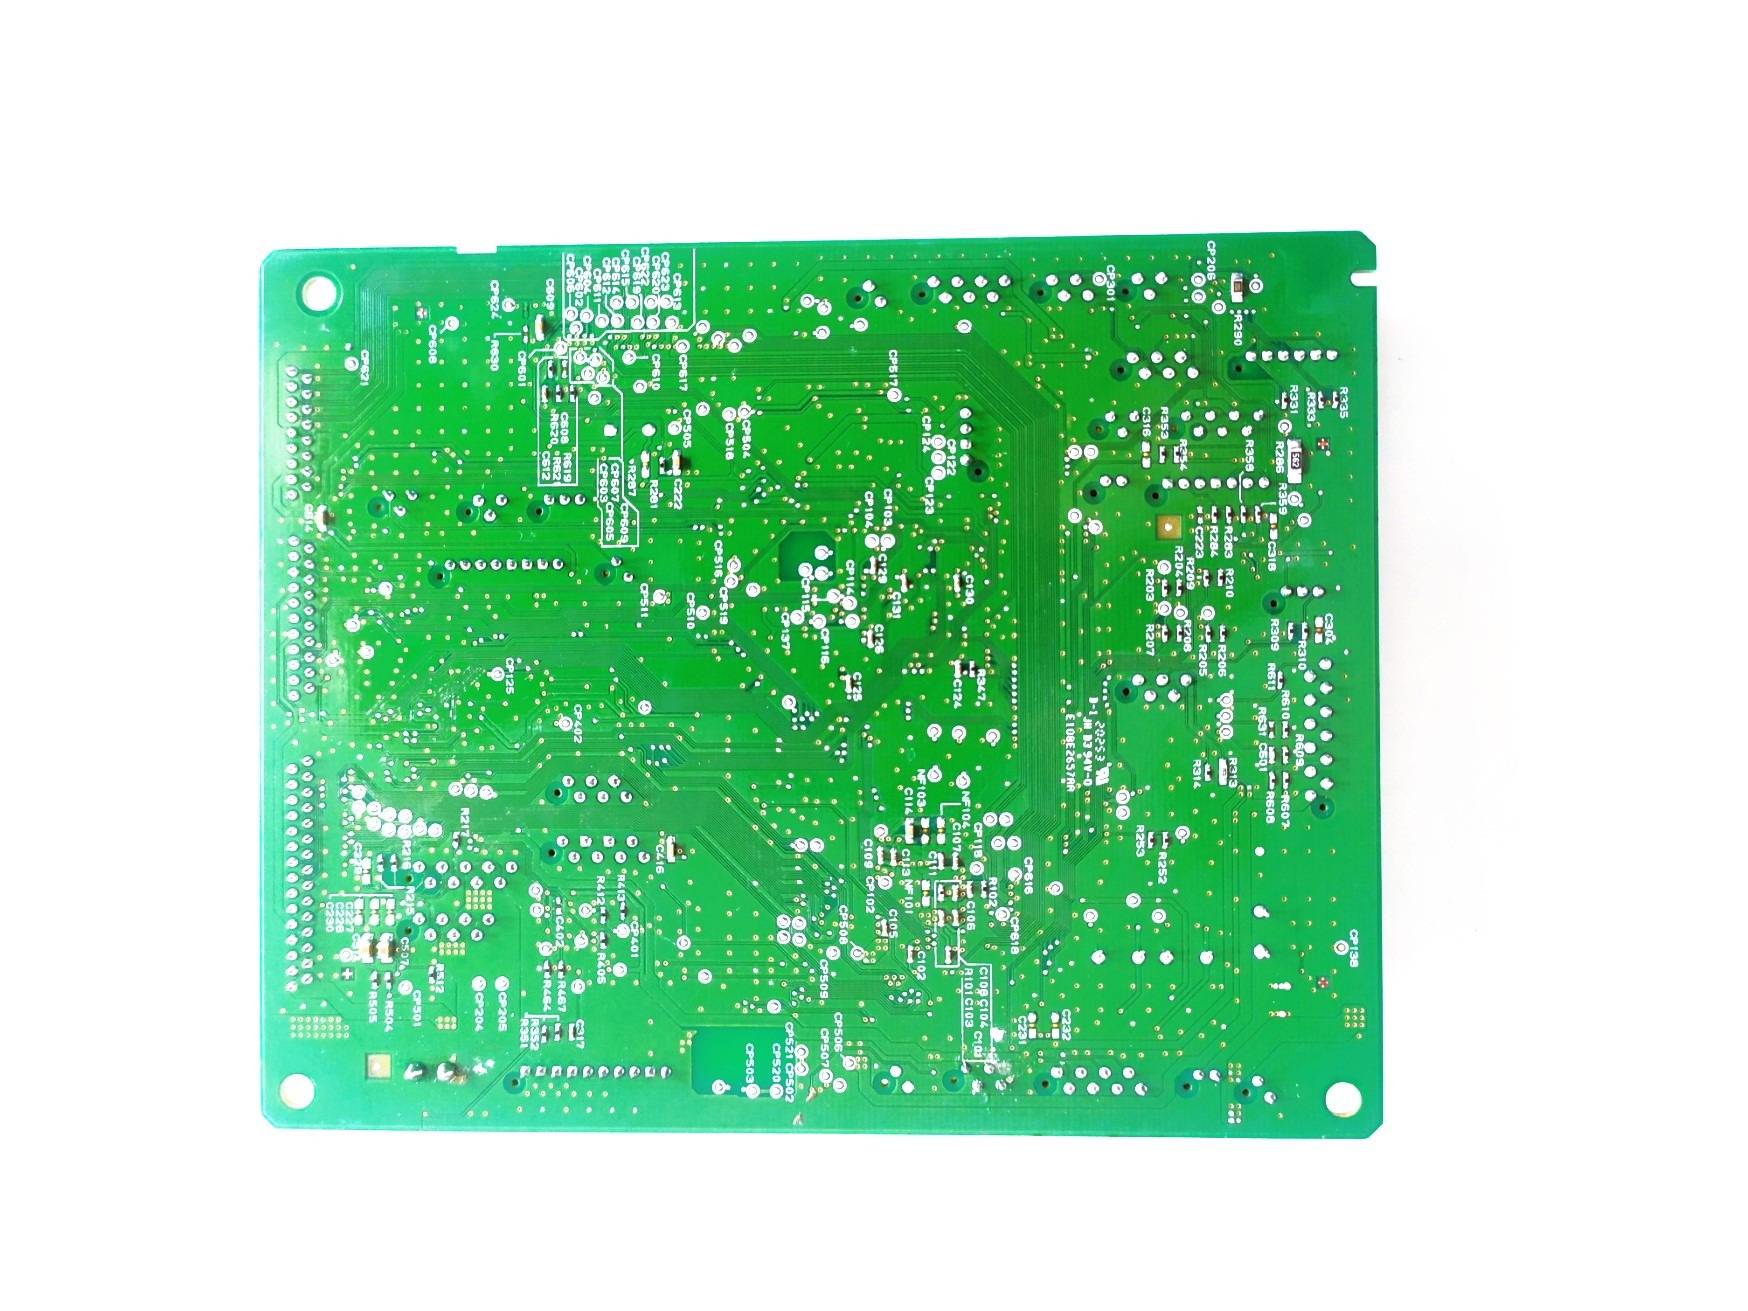 controlador-dc-impresora-hp-laserjet-managed-e60155-e60165-e60175-rm3-7620-quito-ecuador-idkmanager3.jpg